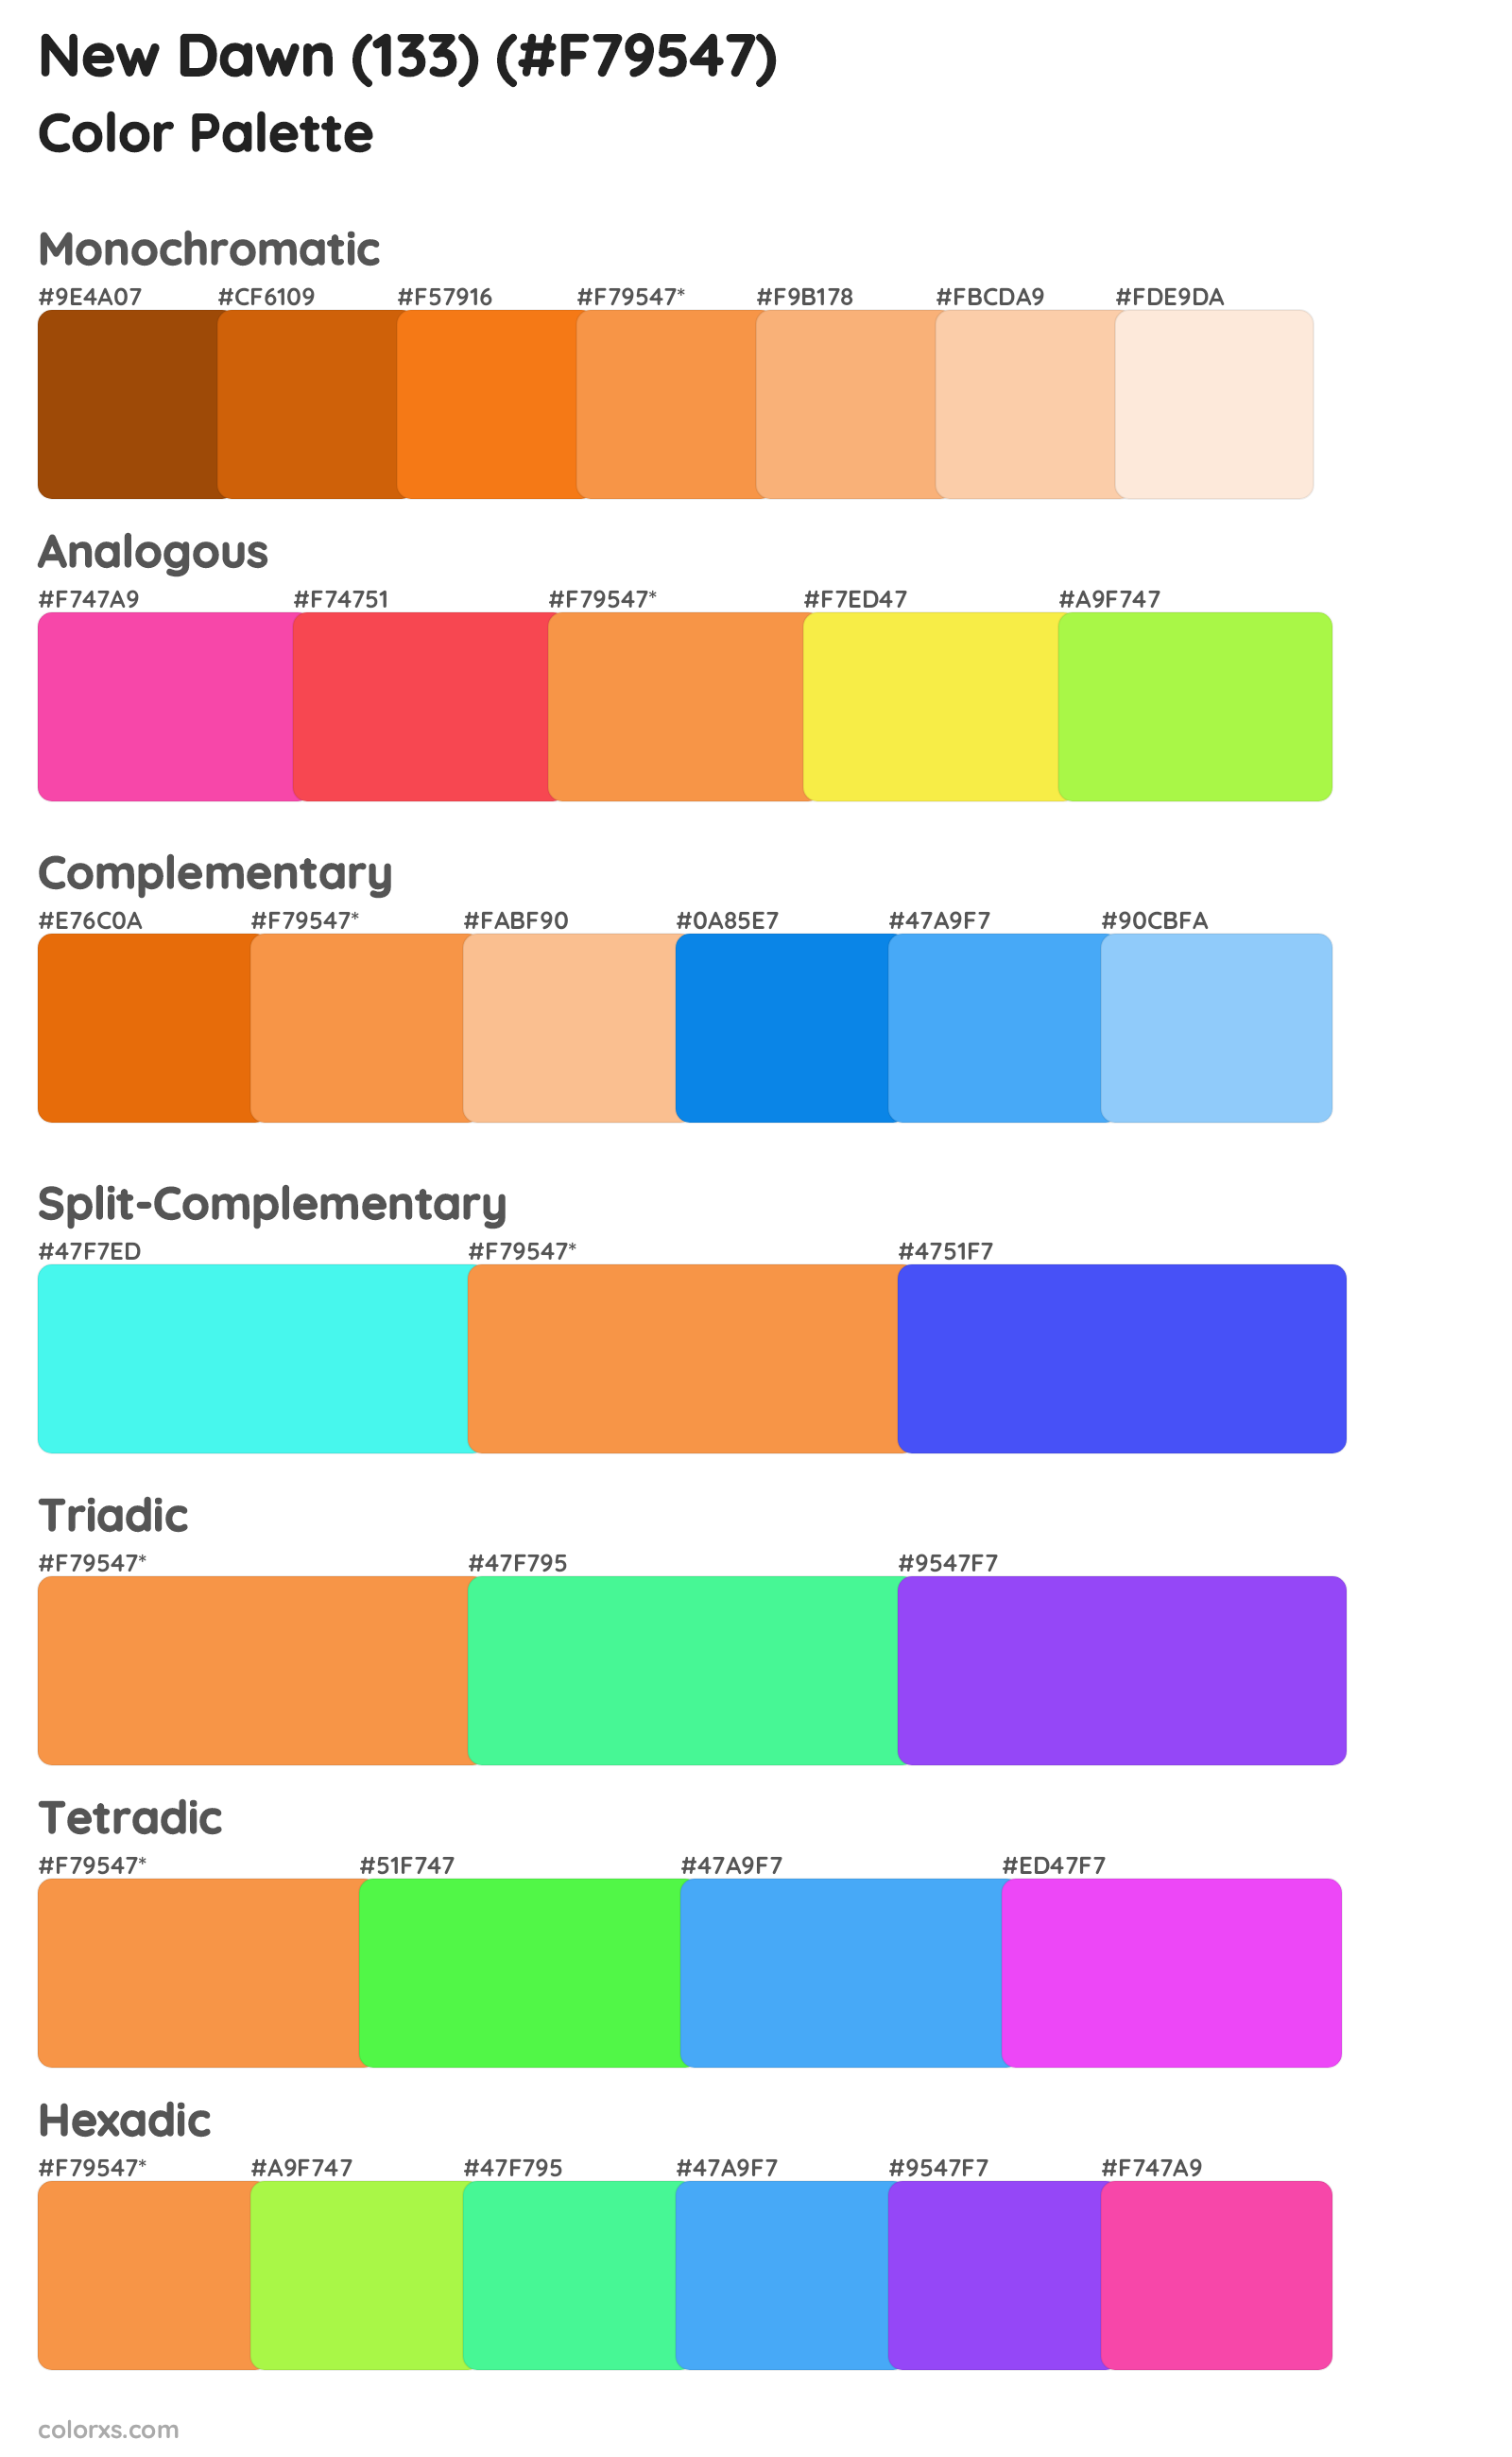 New Dawn (133) Color Scheme Palettes